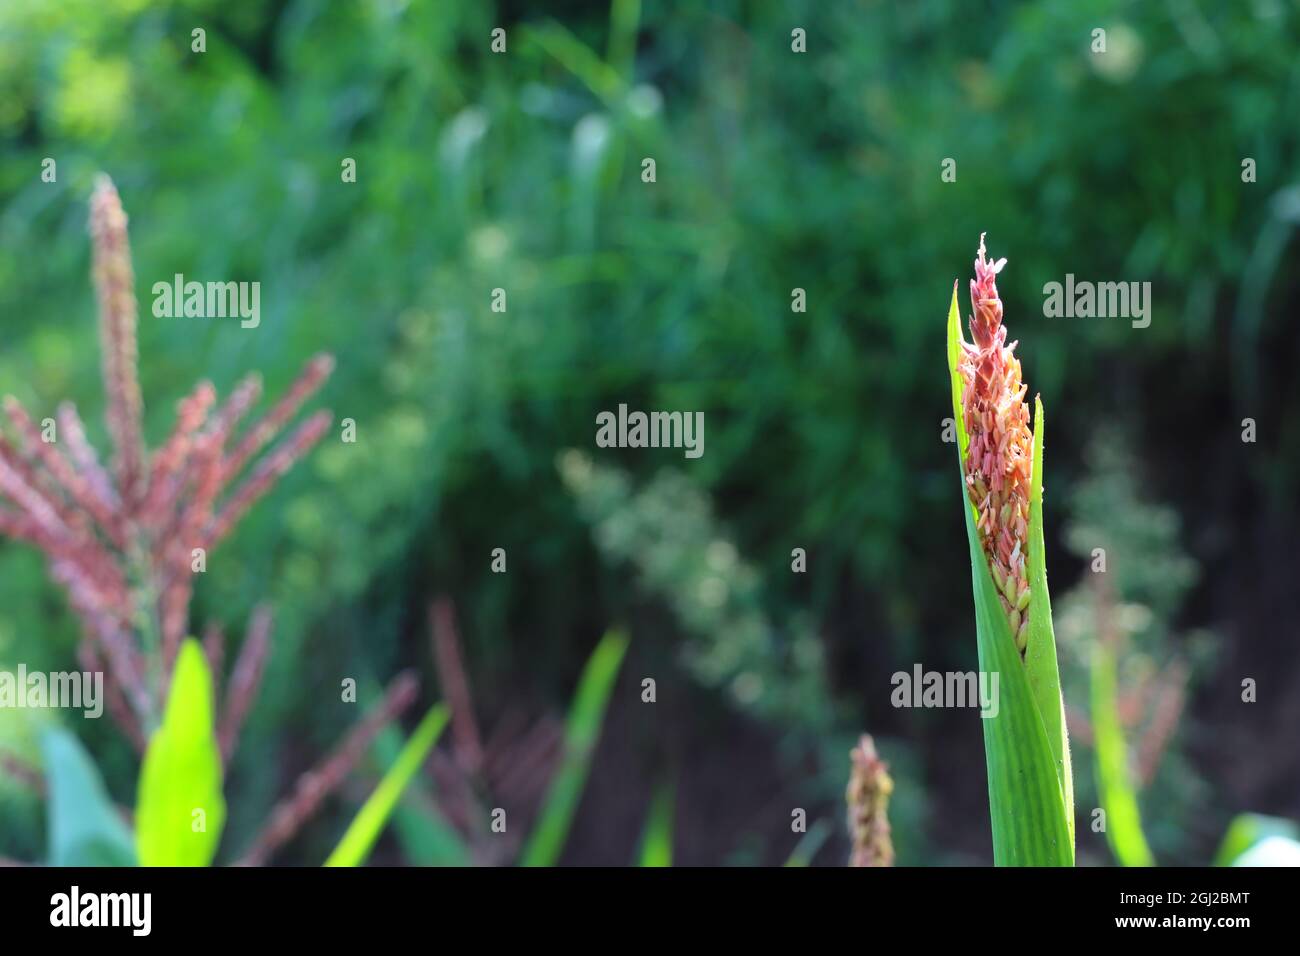 Closeup of Echinochloa muricata plants Stock Photo